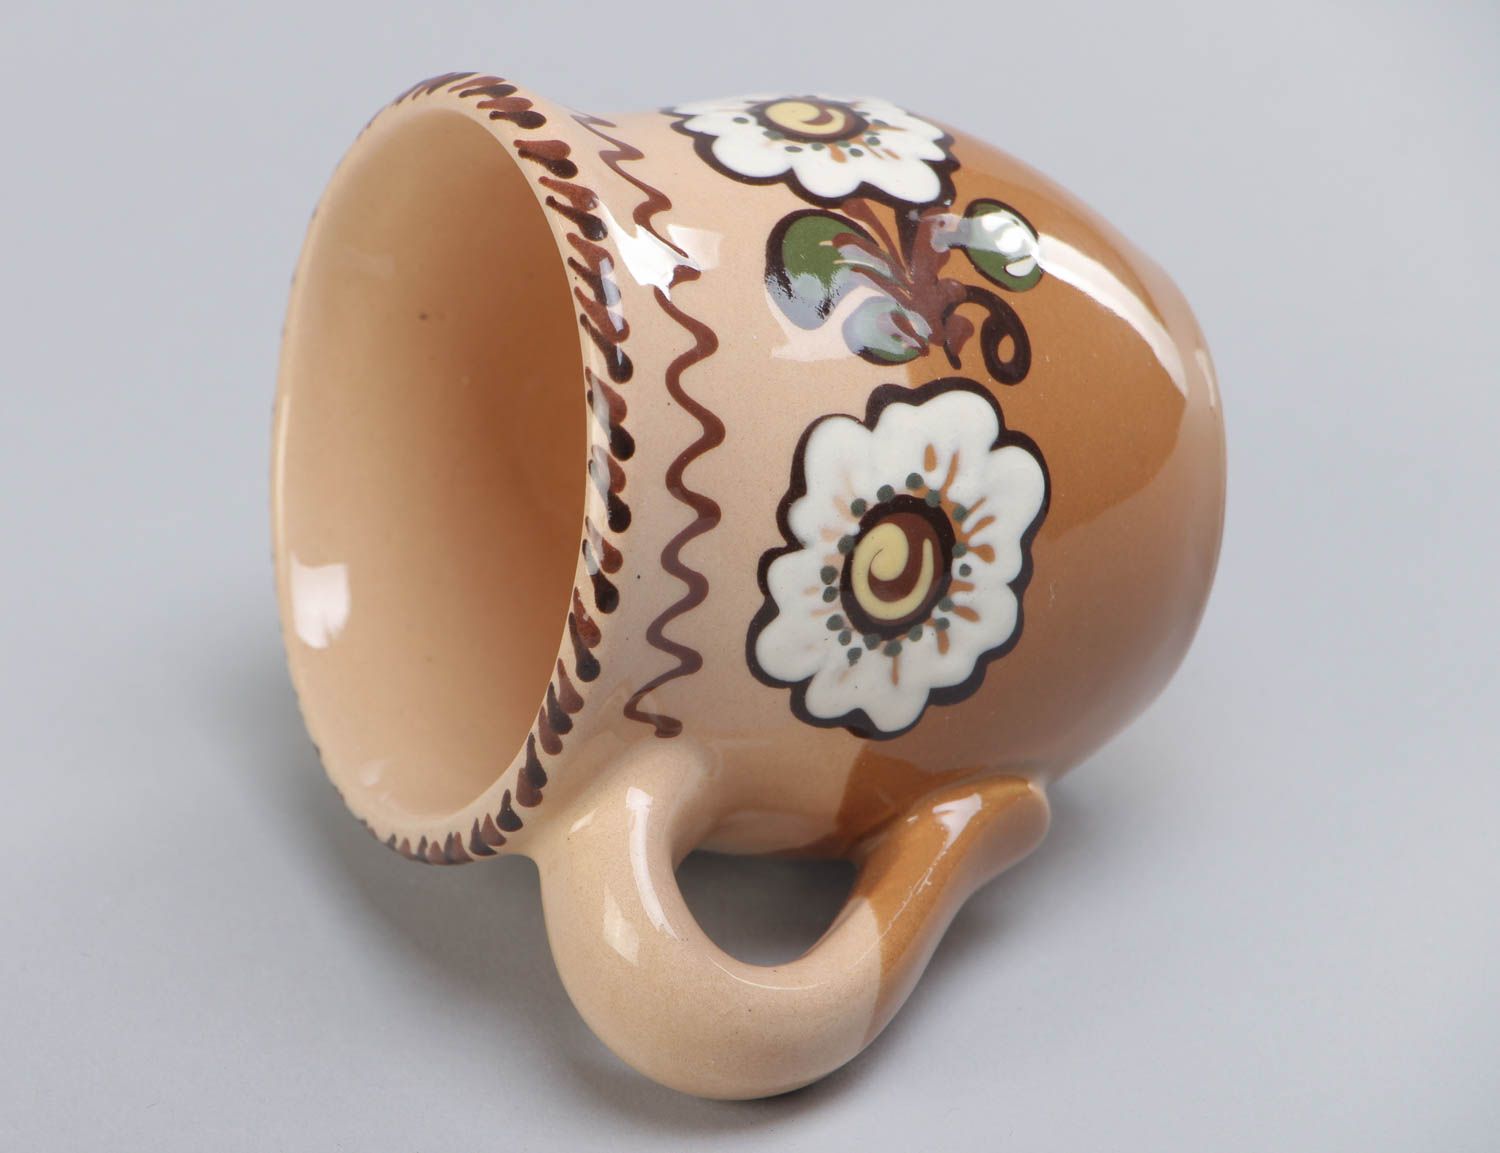 Petite tasse en céramique peinte brune faite main de style ethnique 25 cl photo 4